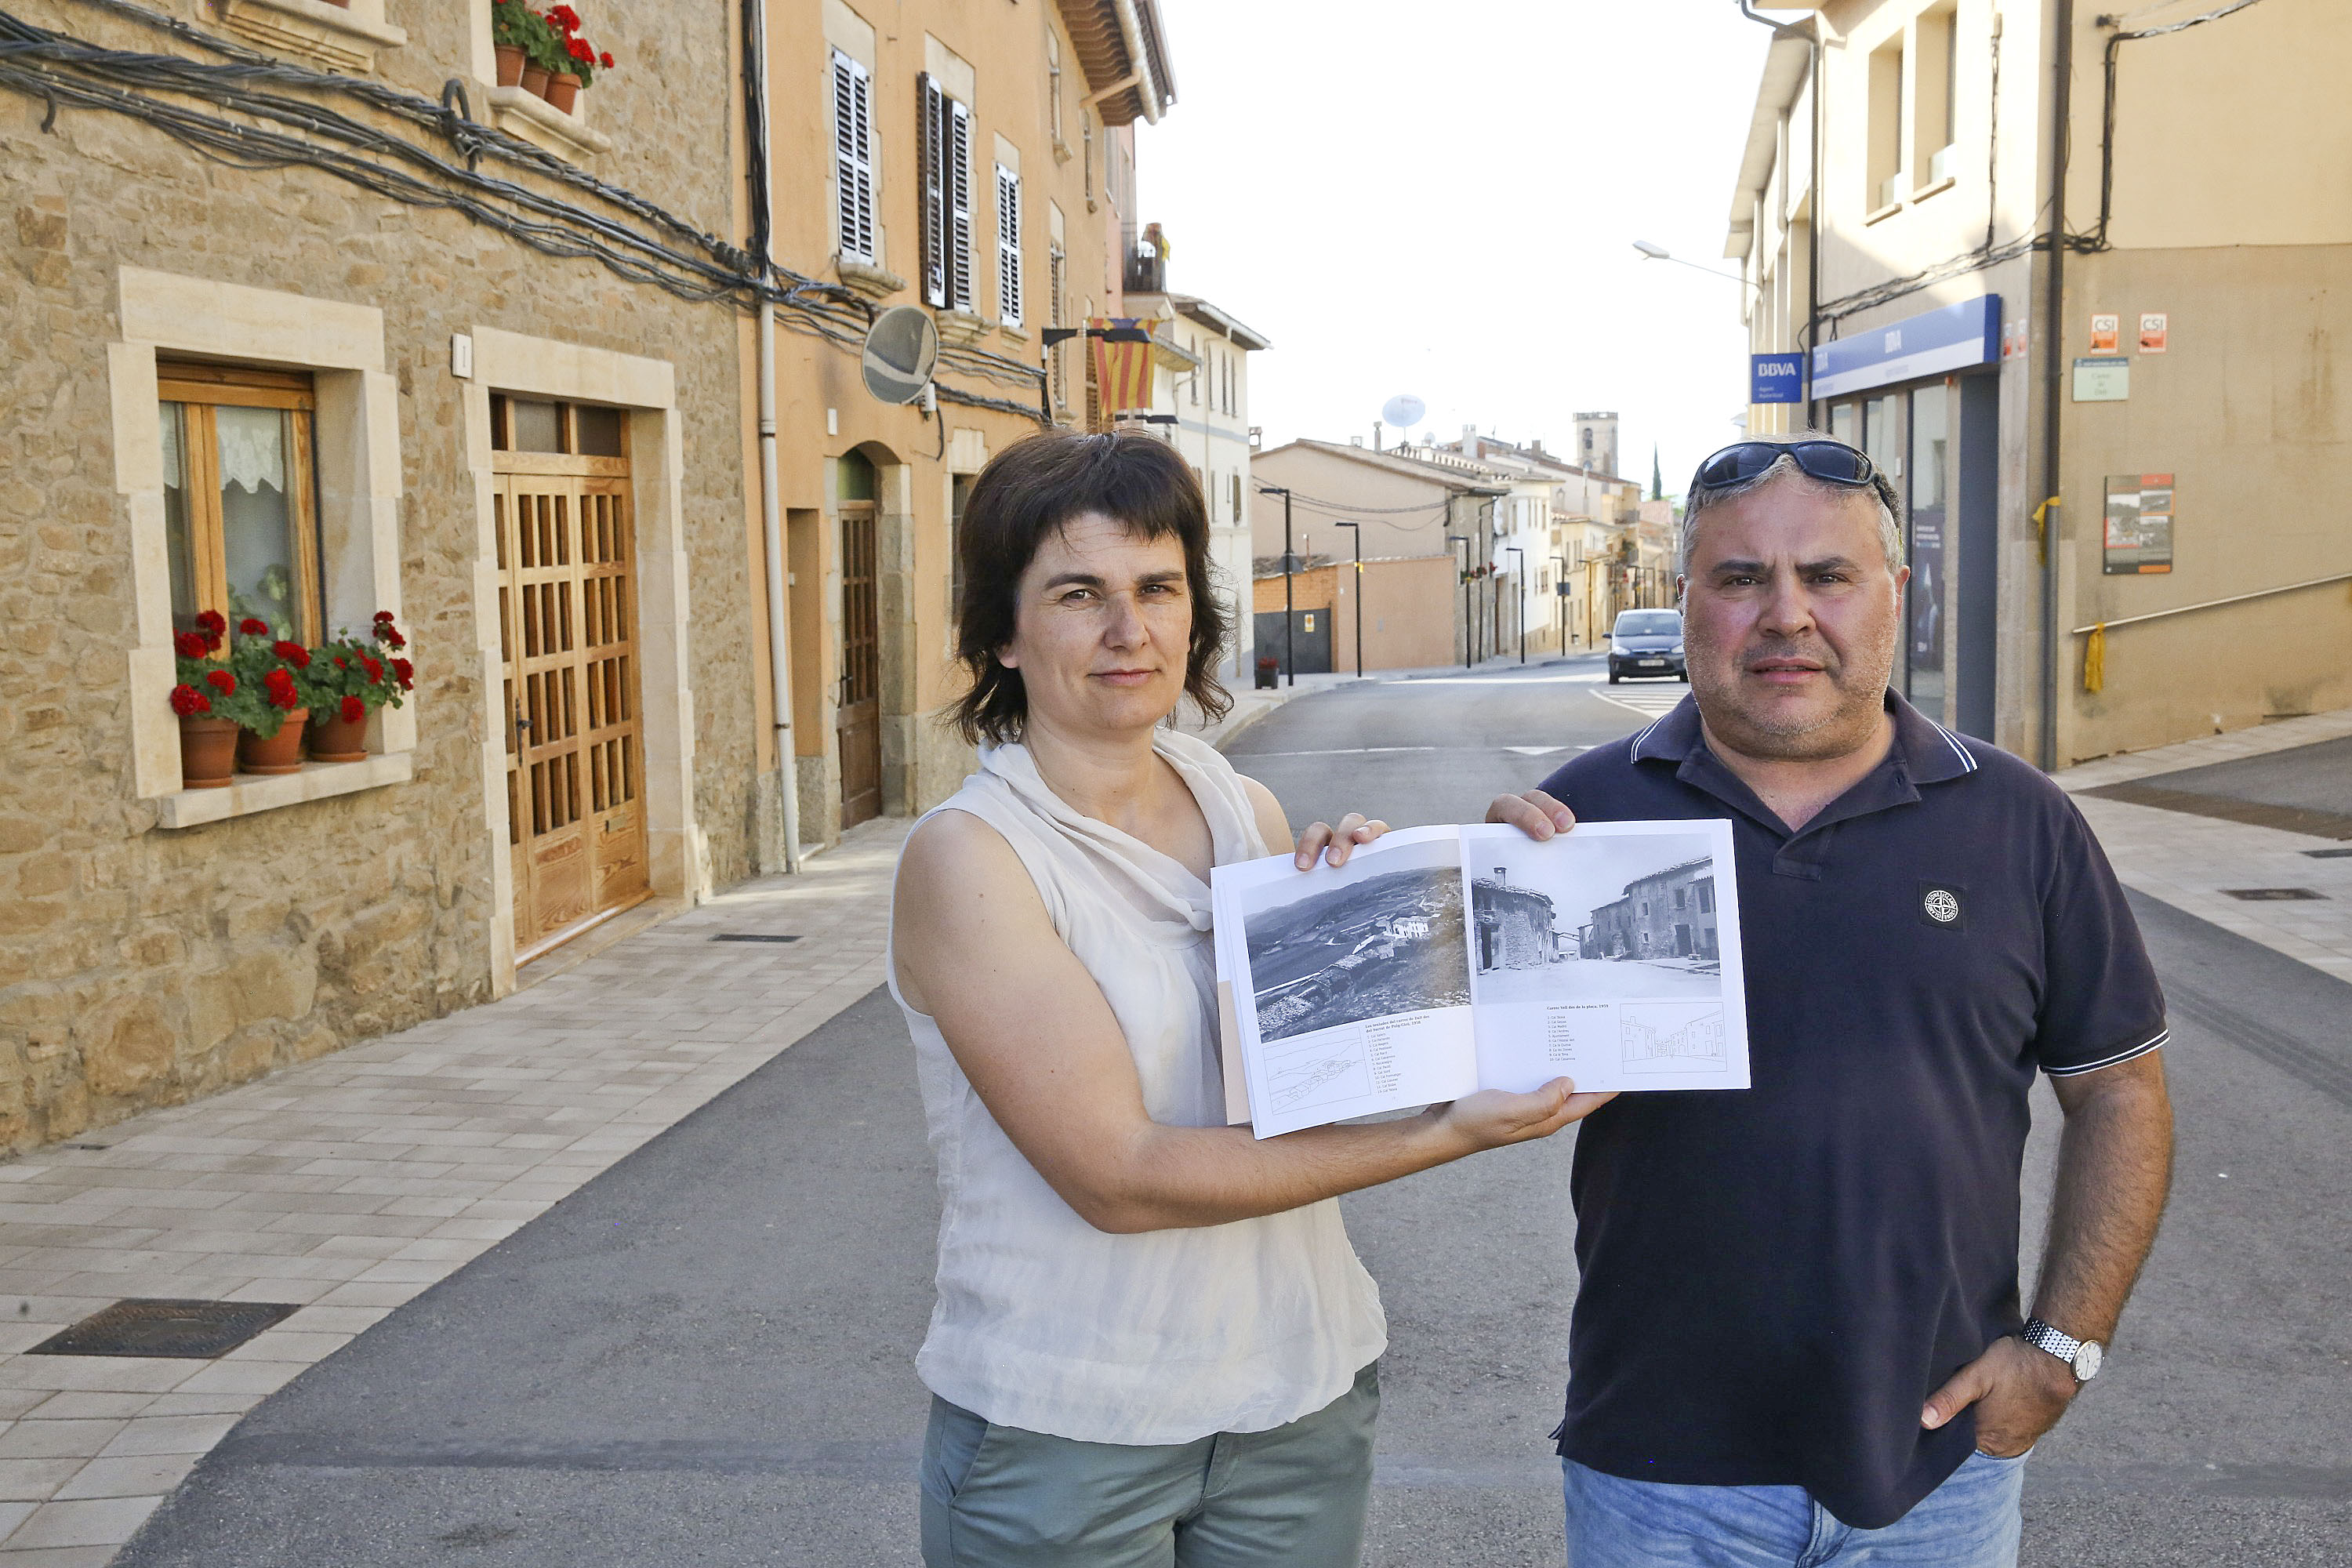 Mercè Sucarrat i Emili Benito, mostrant la pàgina en què surt fotografiat el mateix carrer on es troben